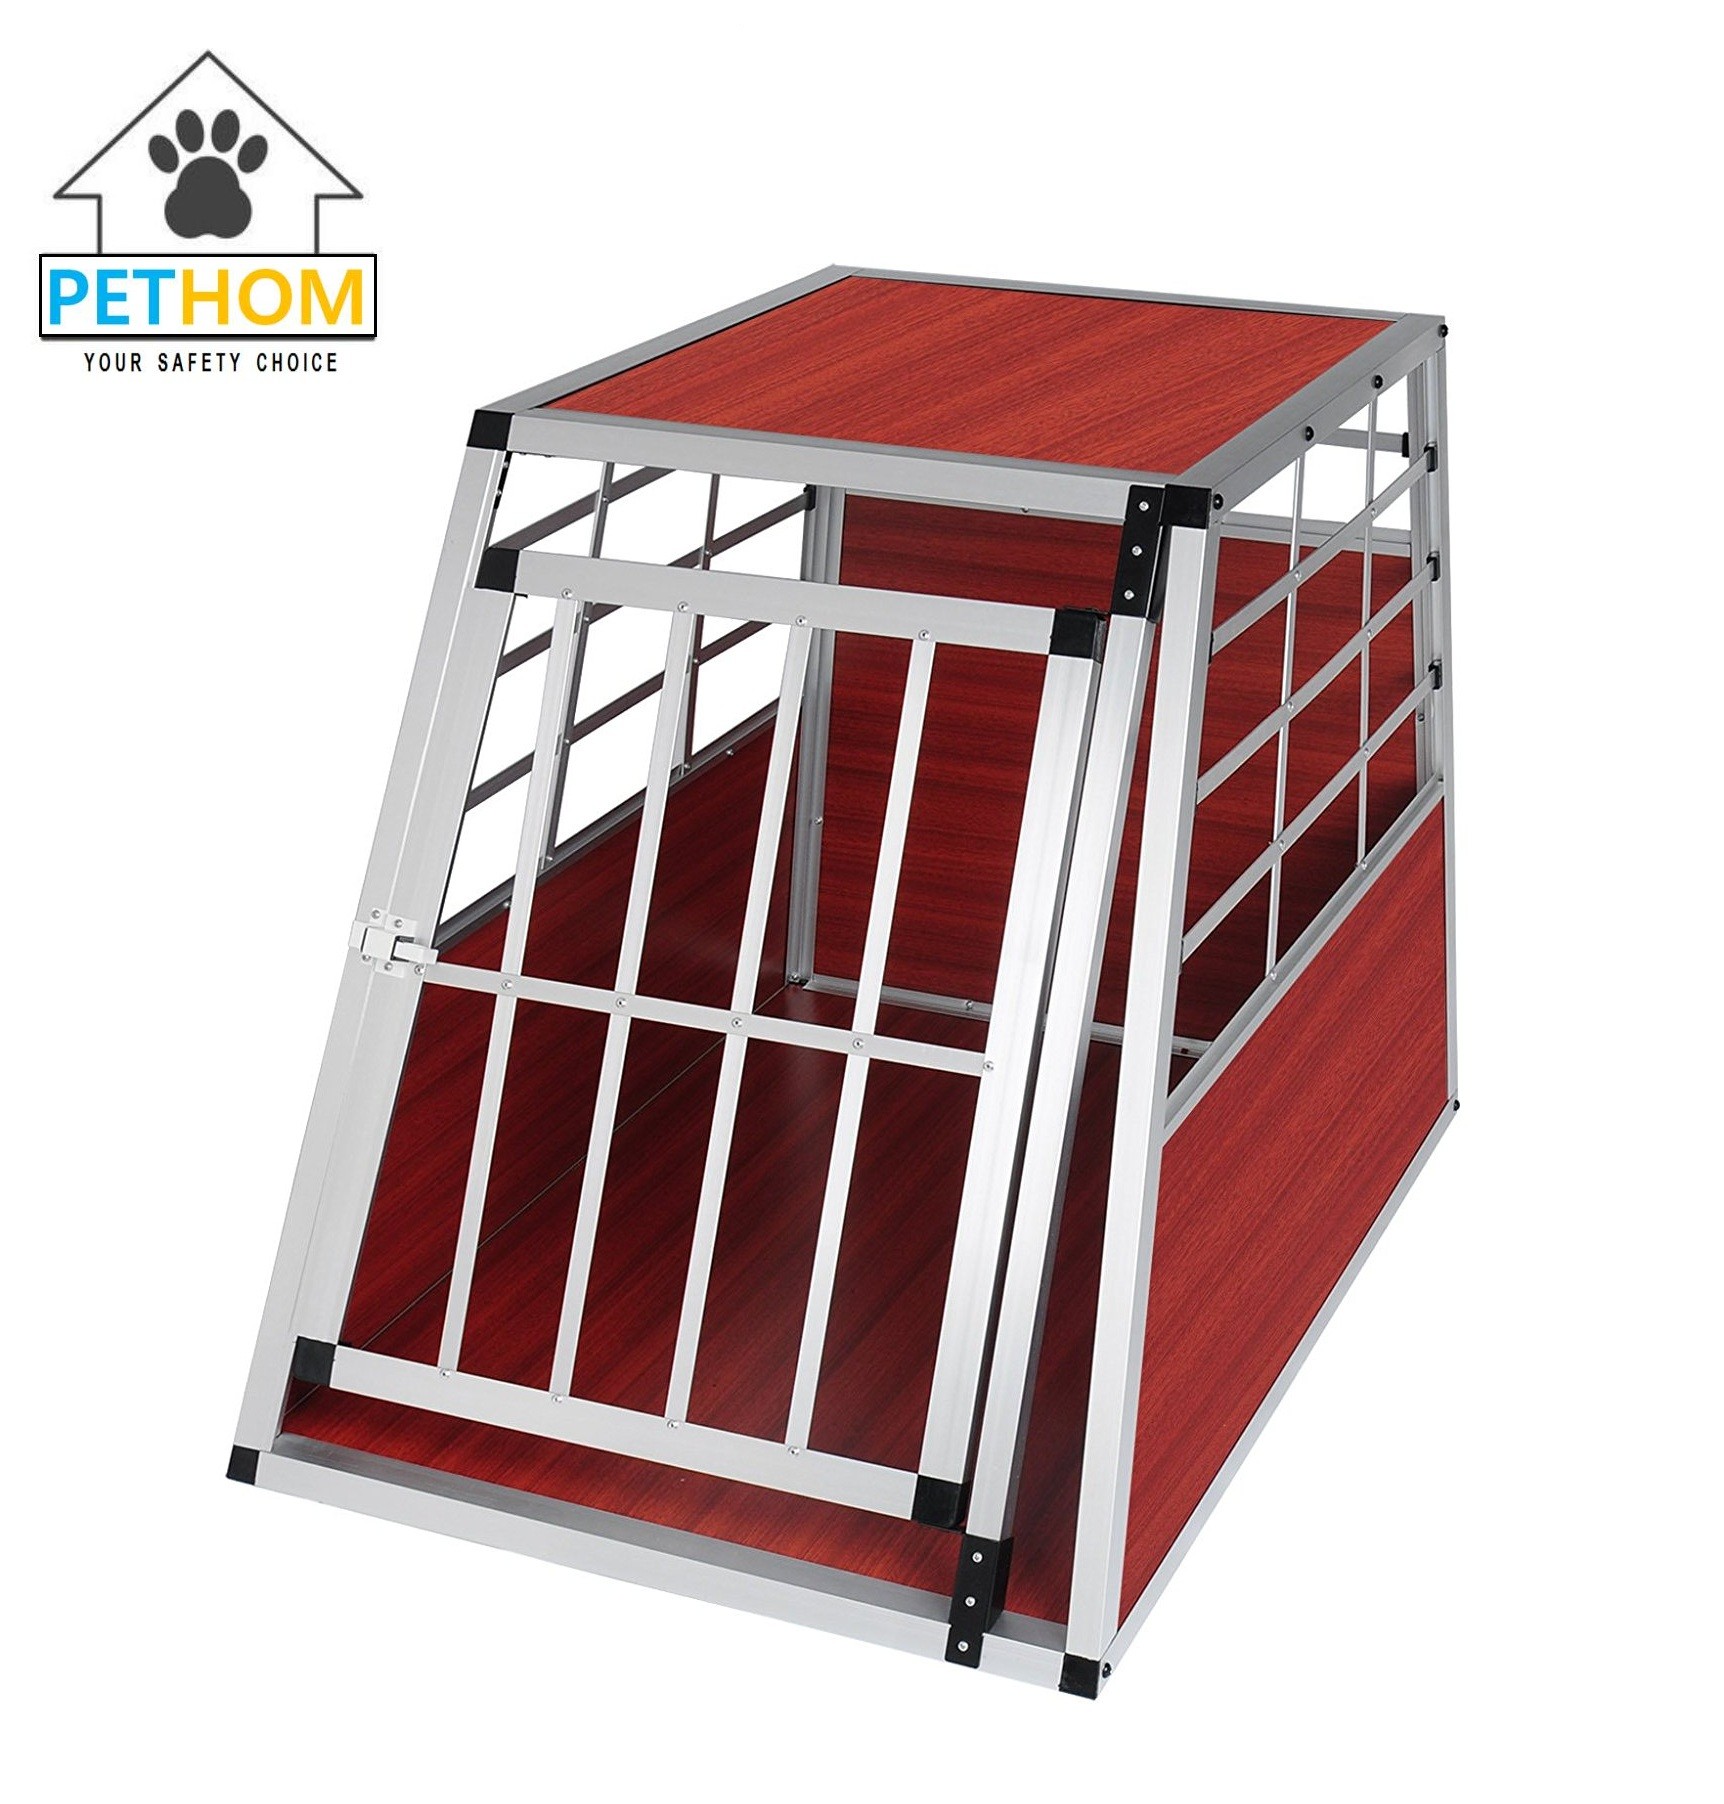 Colorful Aluminum Lockable Pets Dog Cat Travel Carrier Cage 55x77x69.5cm